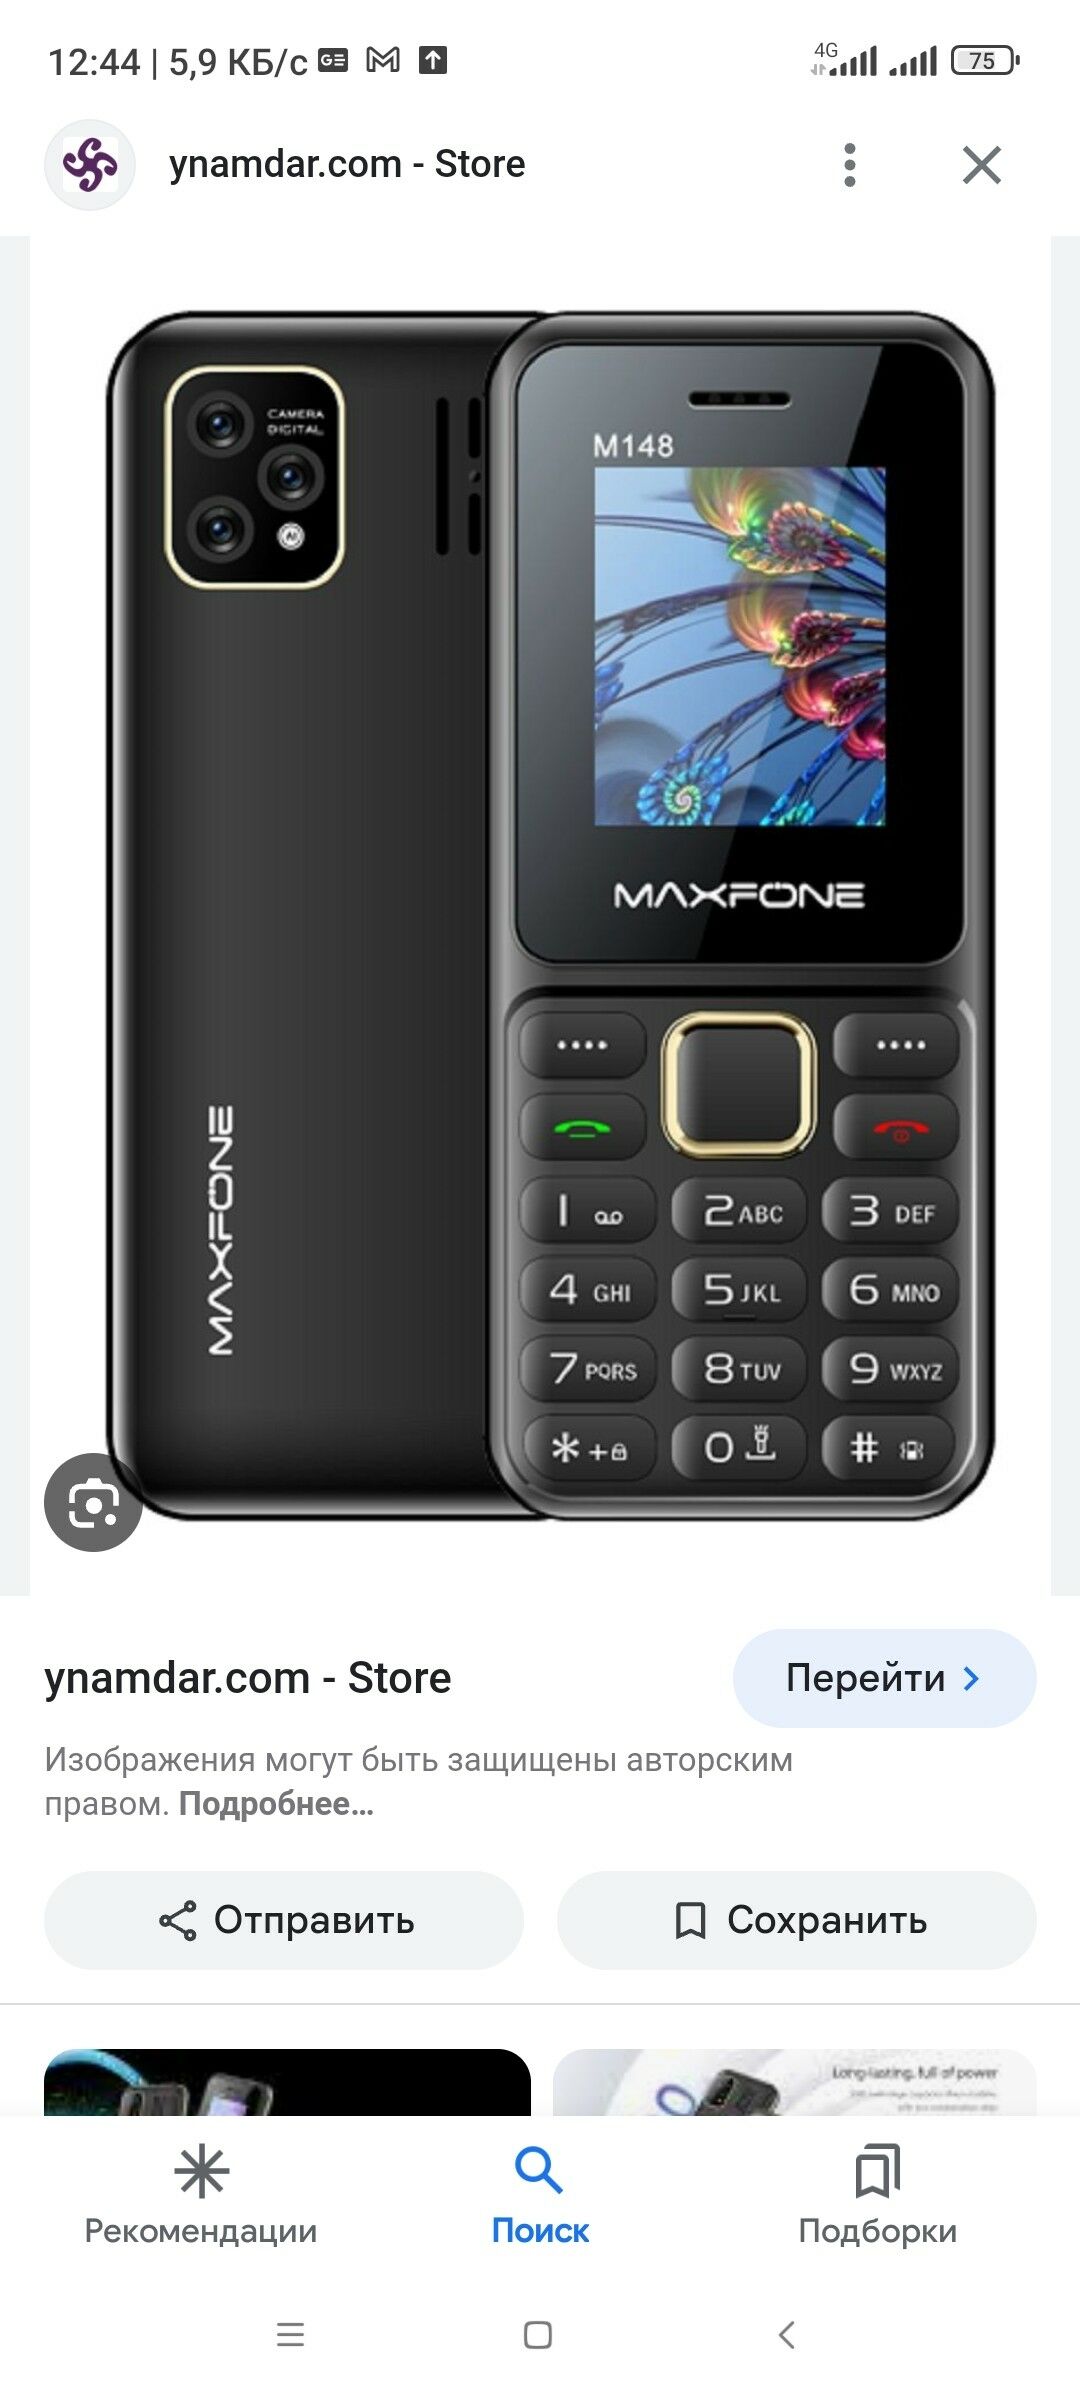 MAXFONE WE NOKIA TELEFONLAR - Мир 7 - img 3